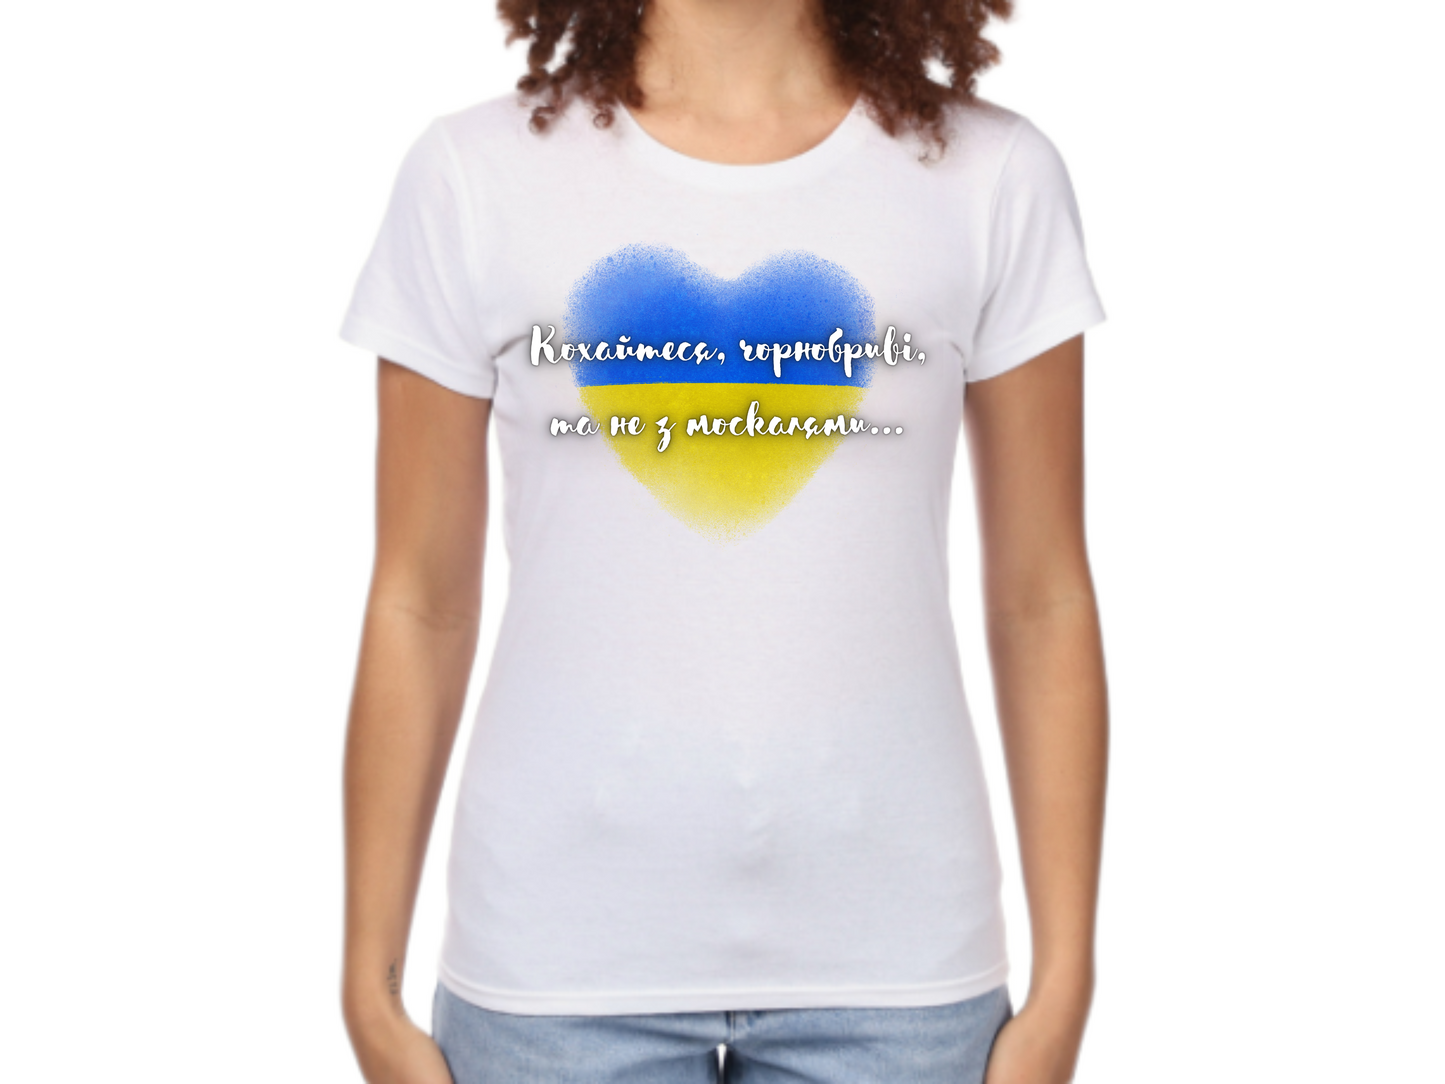 PRE-ORDER Woman T-shirt with the print Taras Shevchenko quote (Kohaytesya chornobryvi ta ne z moskalyamy)